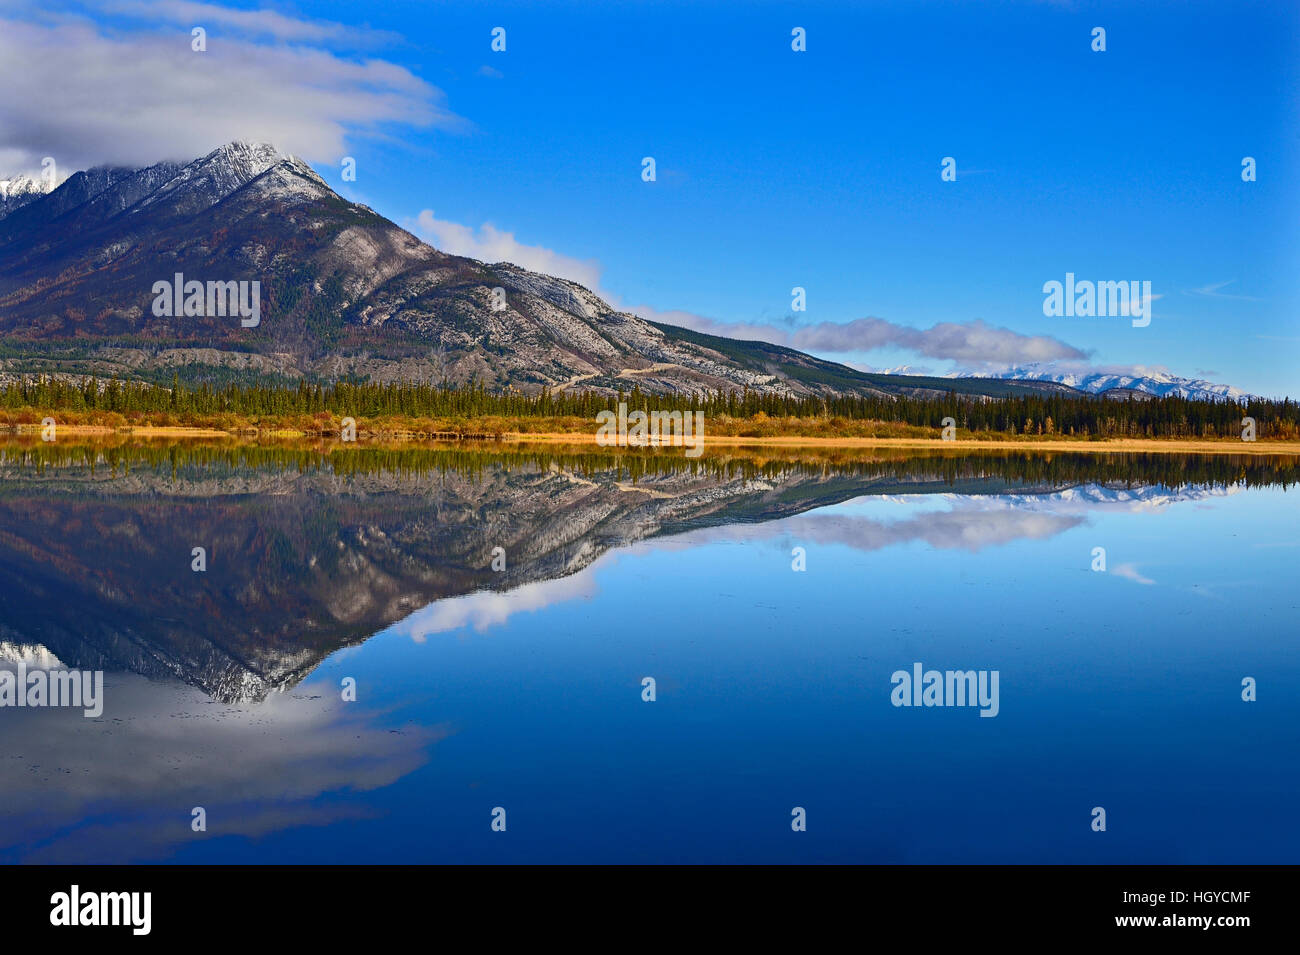 Einem schönen Landschaftsbild von den felsigen Bergen reflektiert in dem ruhigen Wasser des Sees Jasper Stockfoto